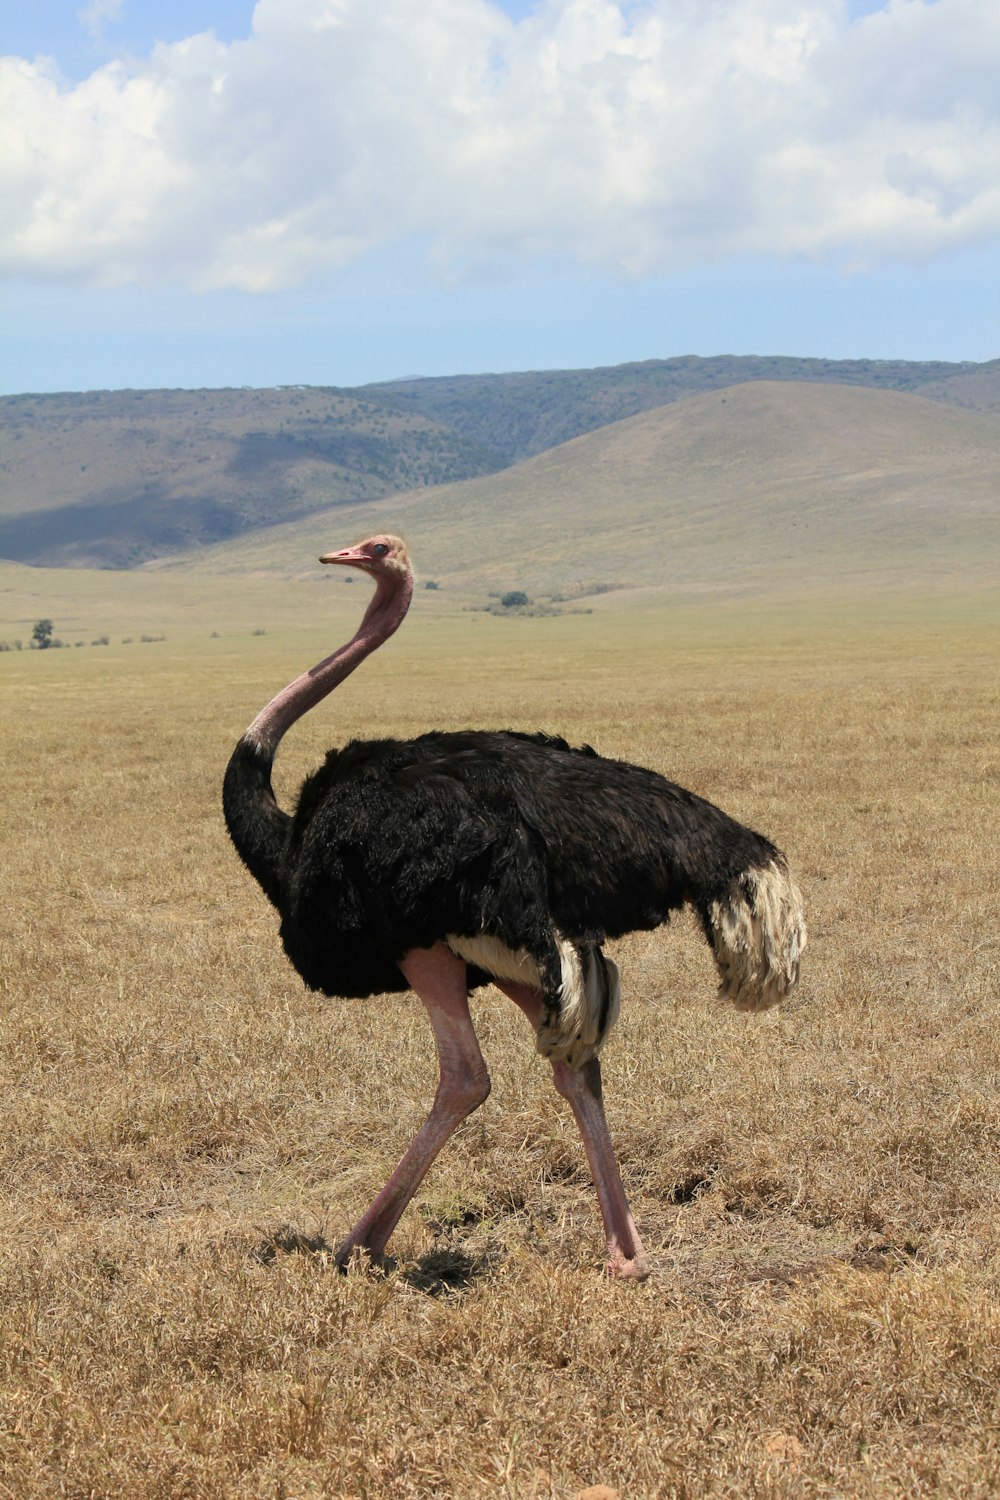 black ostrich on grassy field